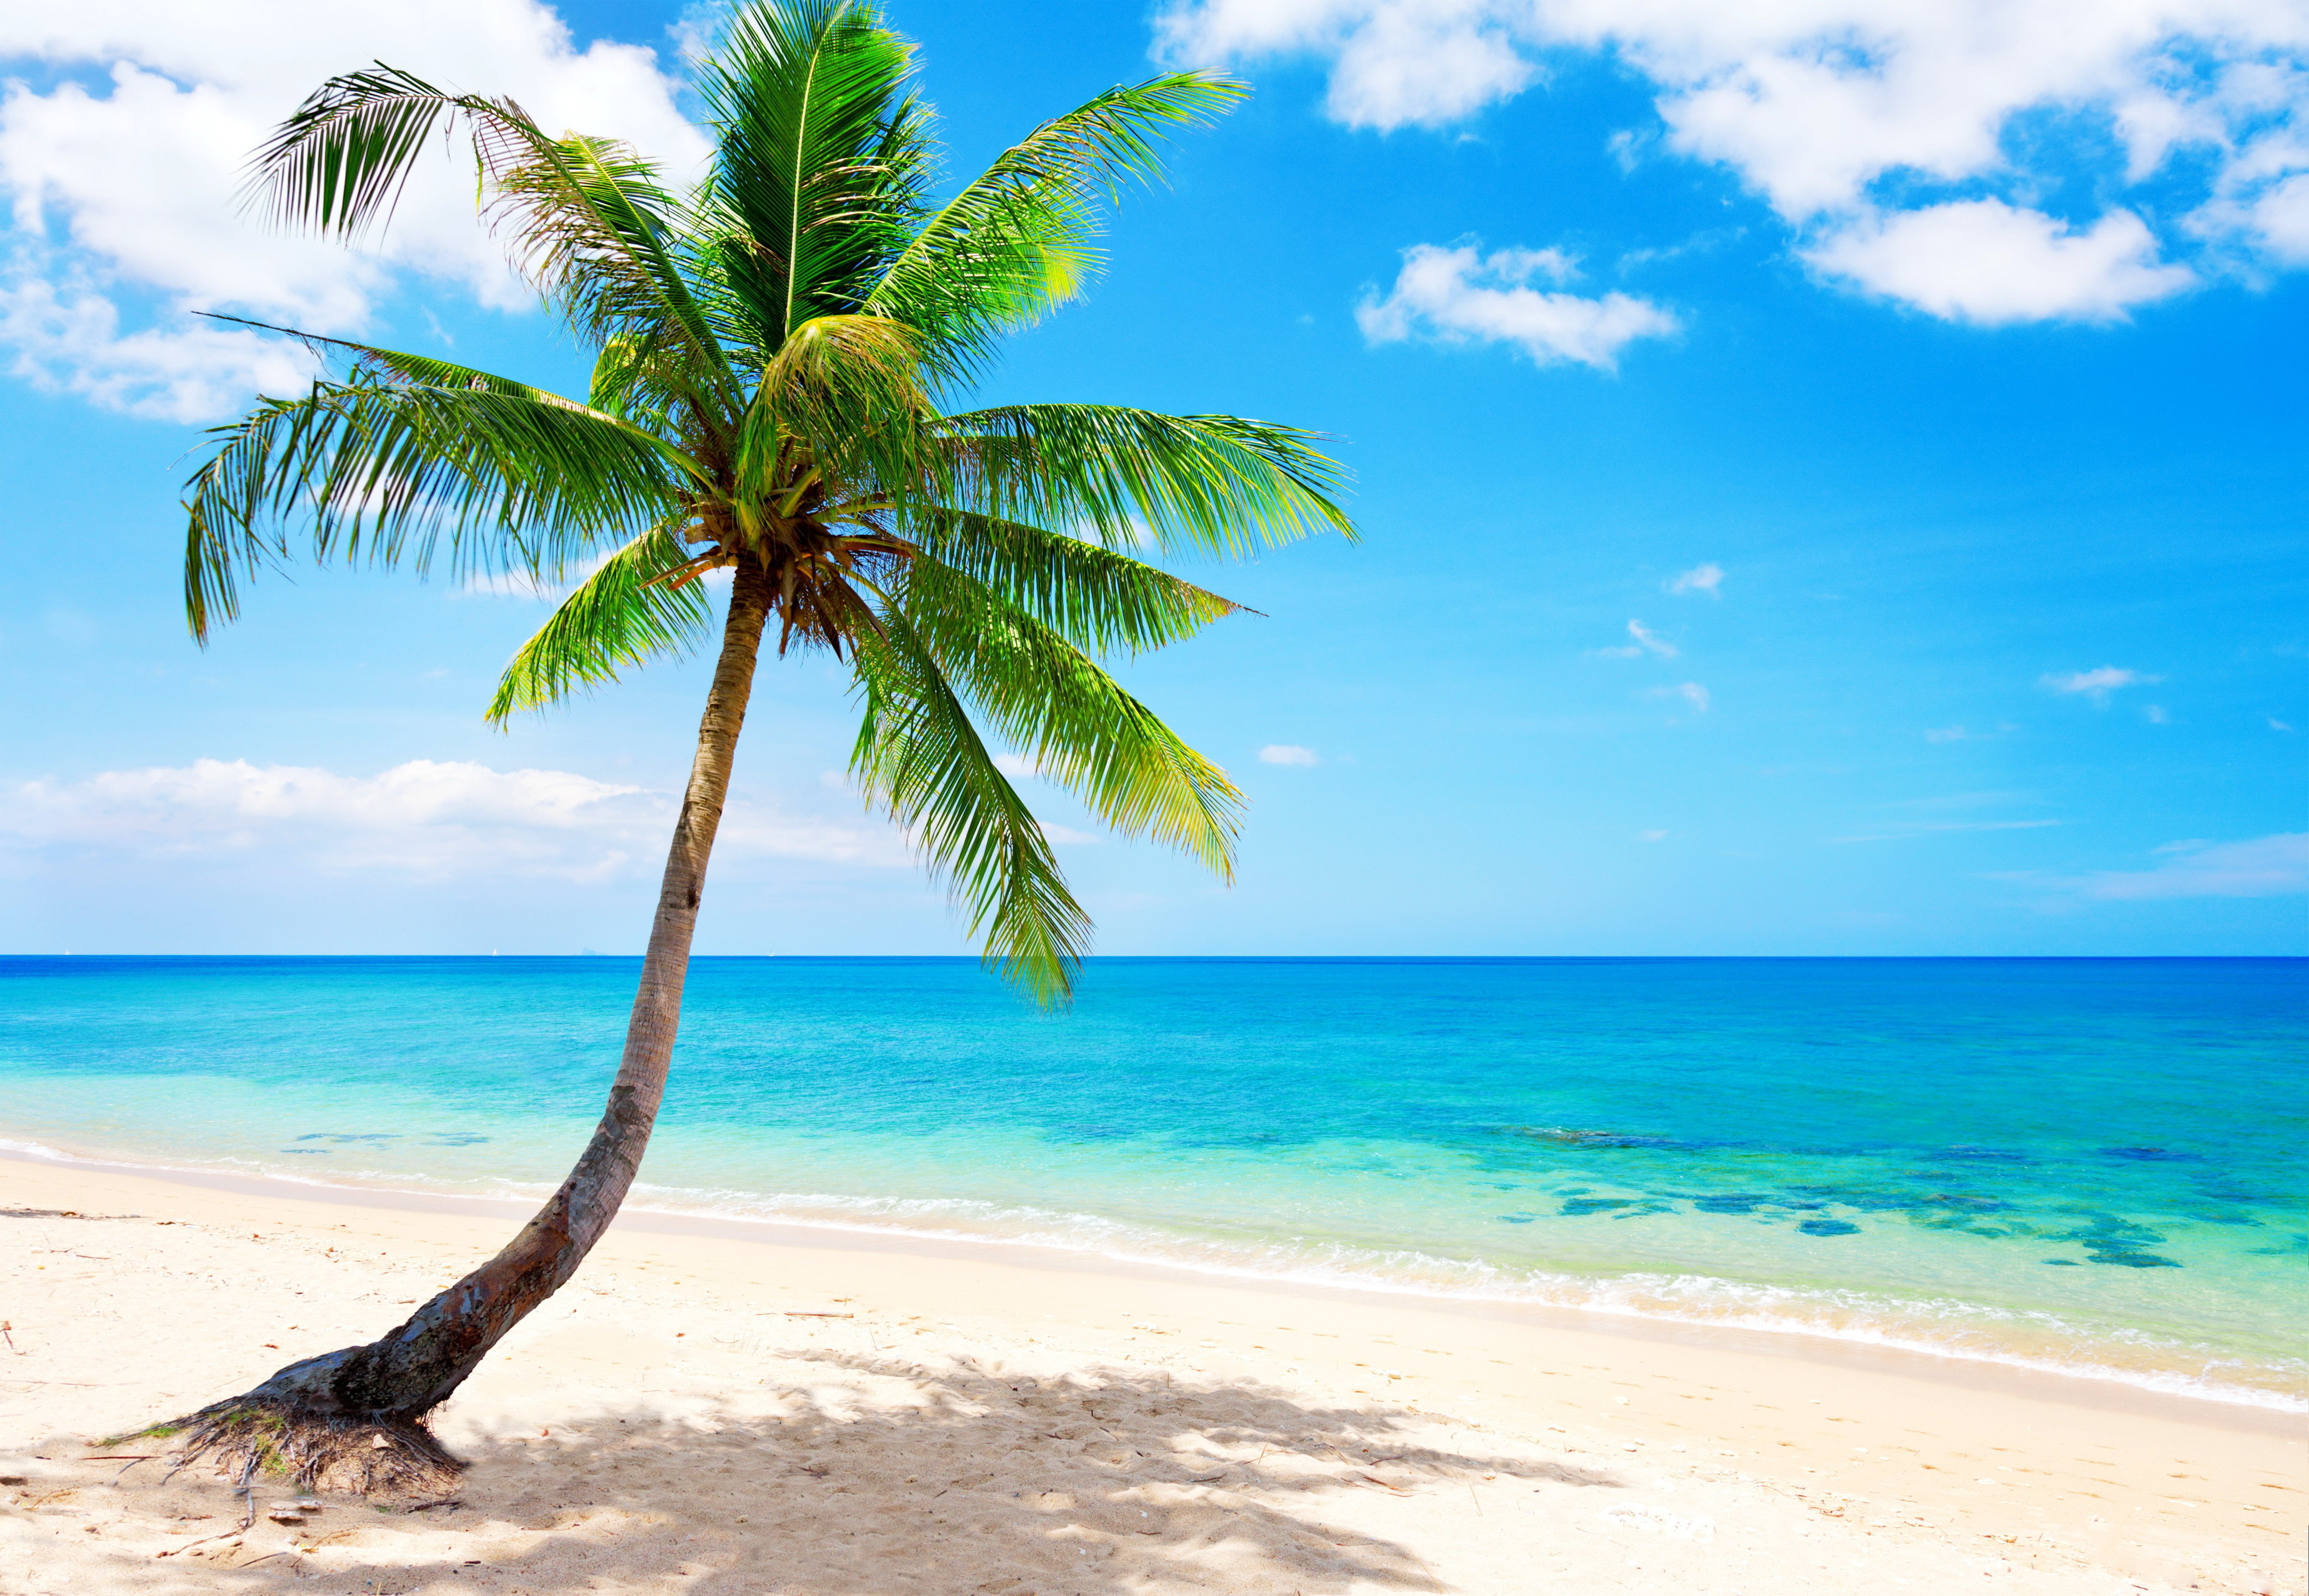 Beach, Blue, coast, emerald, ocean, palm, paradise, sea, tropical